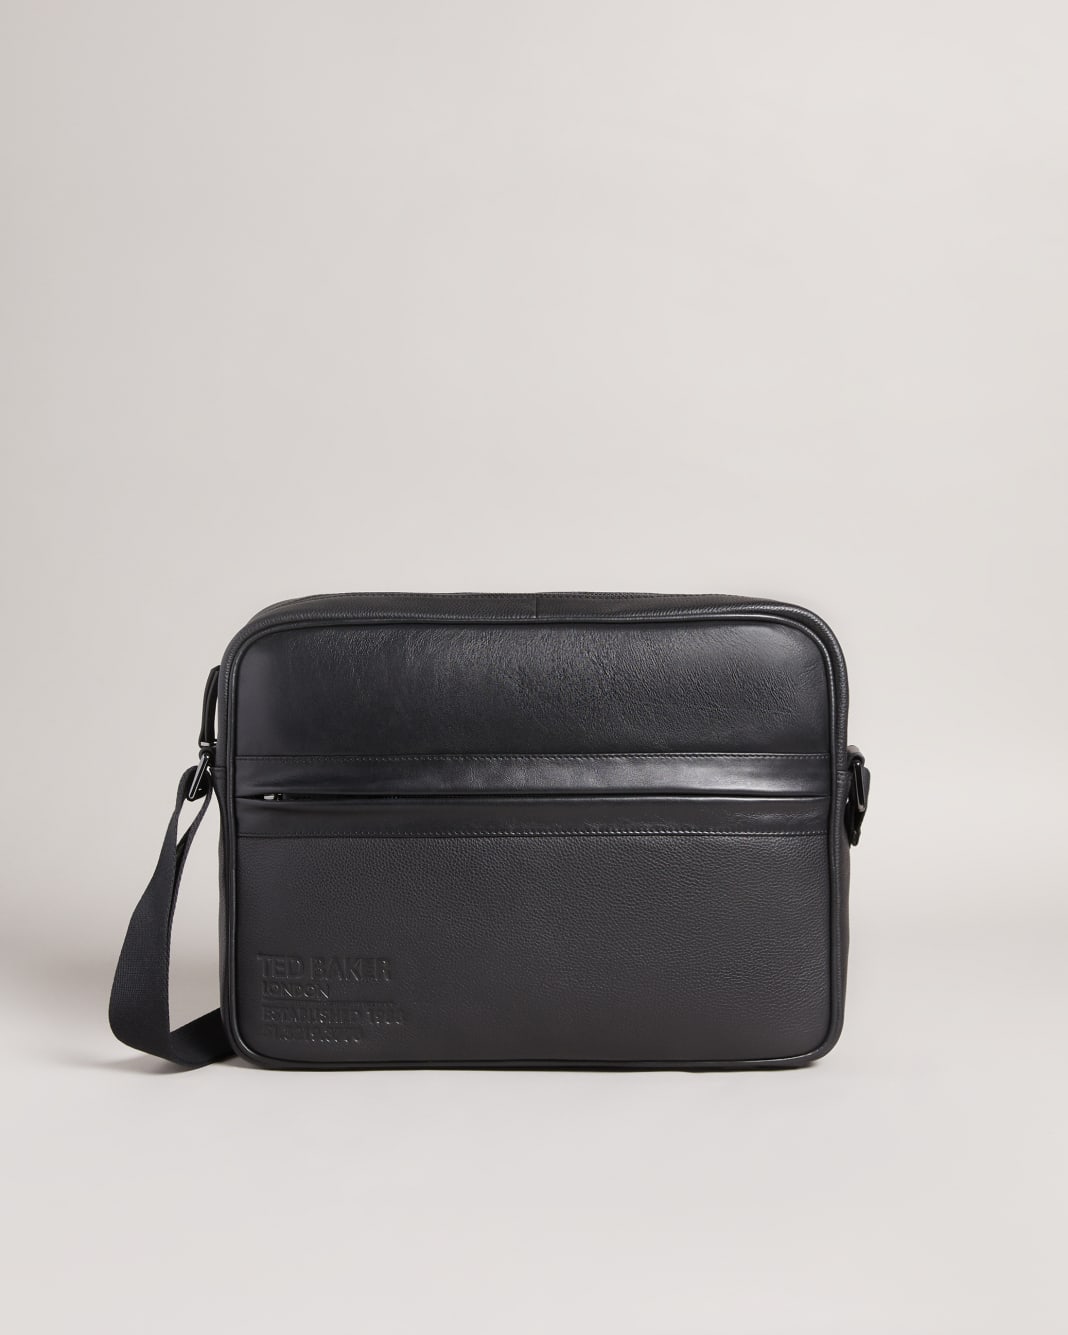 테드 베이커 Ted Baker Branded Leather Messenger Bag,Black